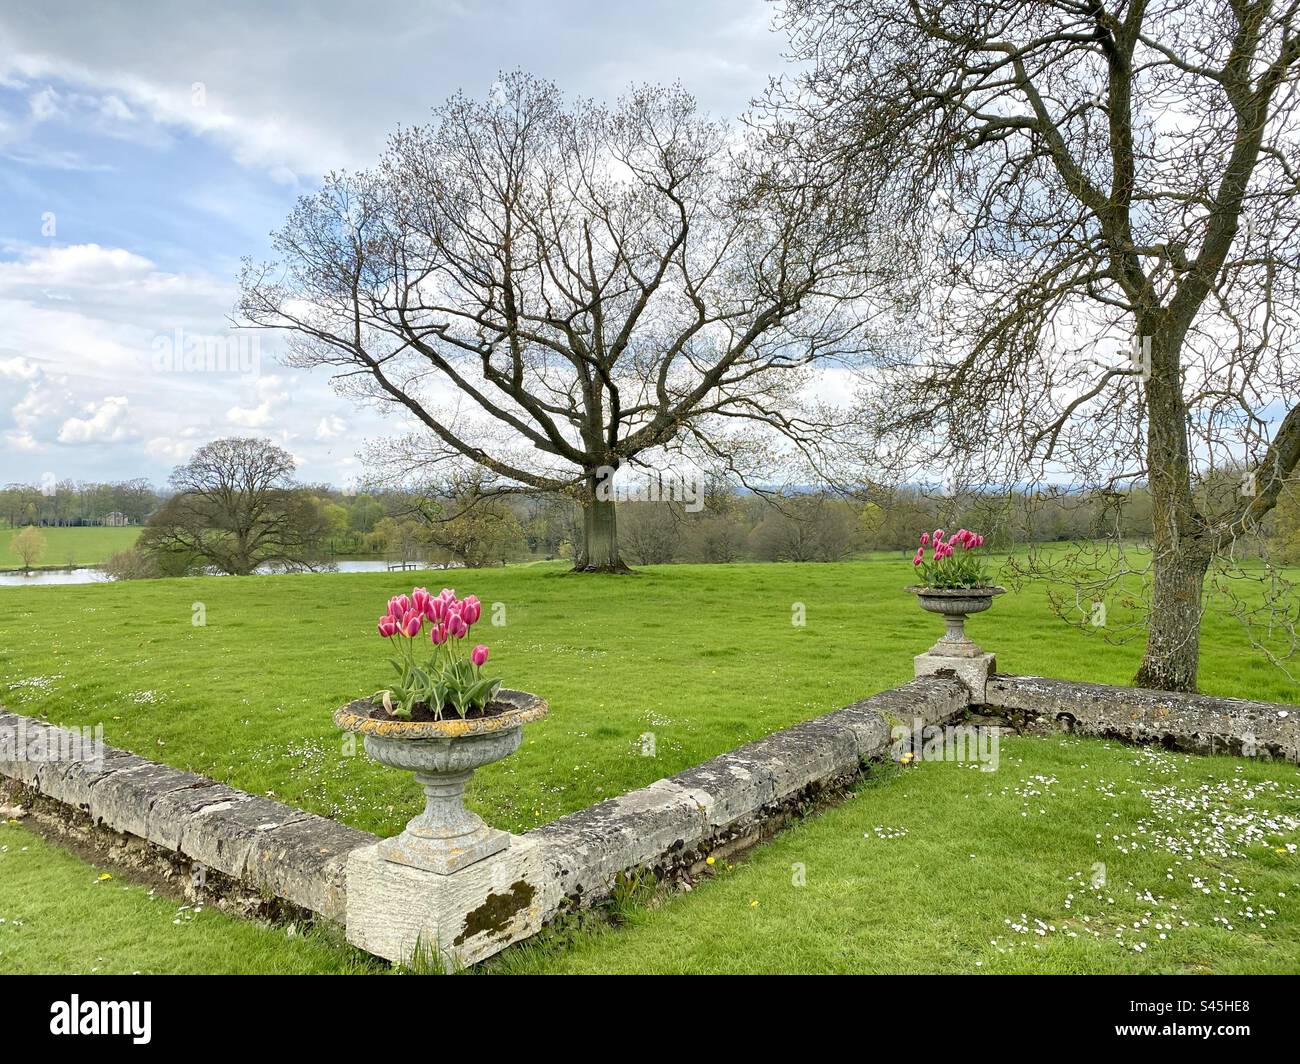 Vue panoramique sur un parc au printemps en Angleterre avec des jardinières en pierre avec de belles tulipes roses Banque D'Images